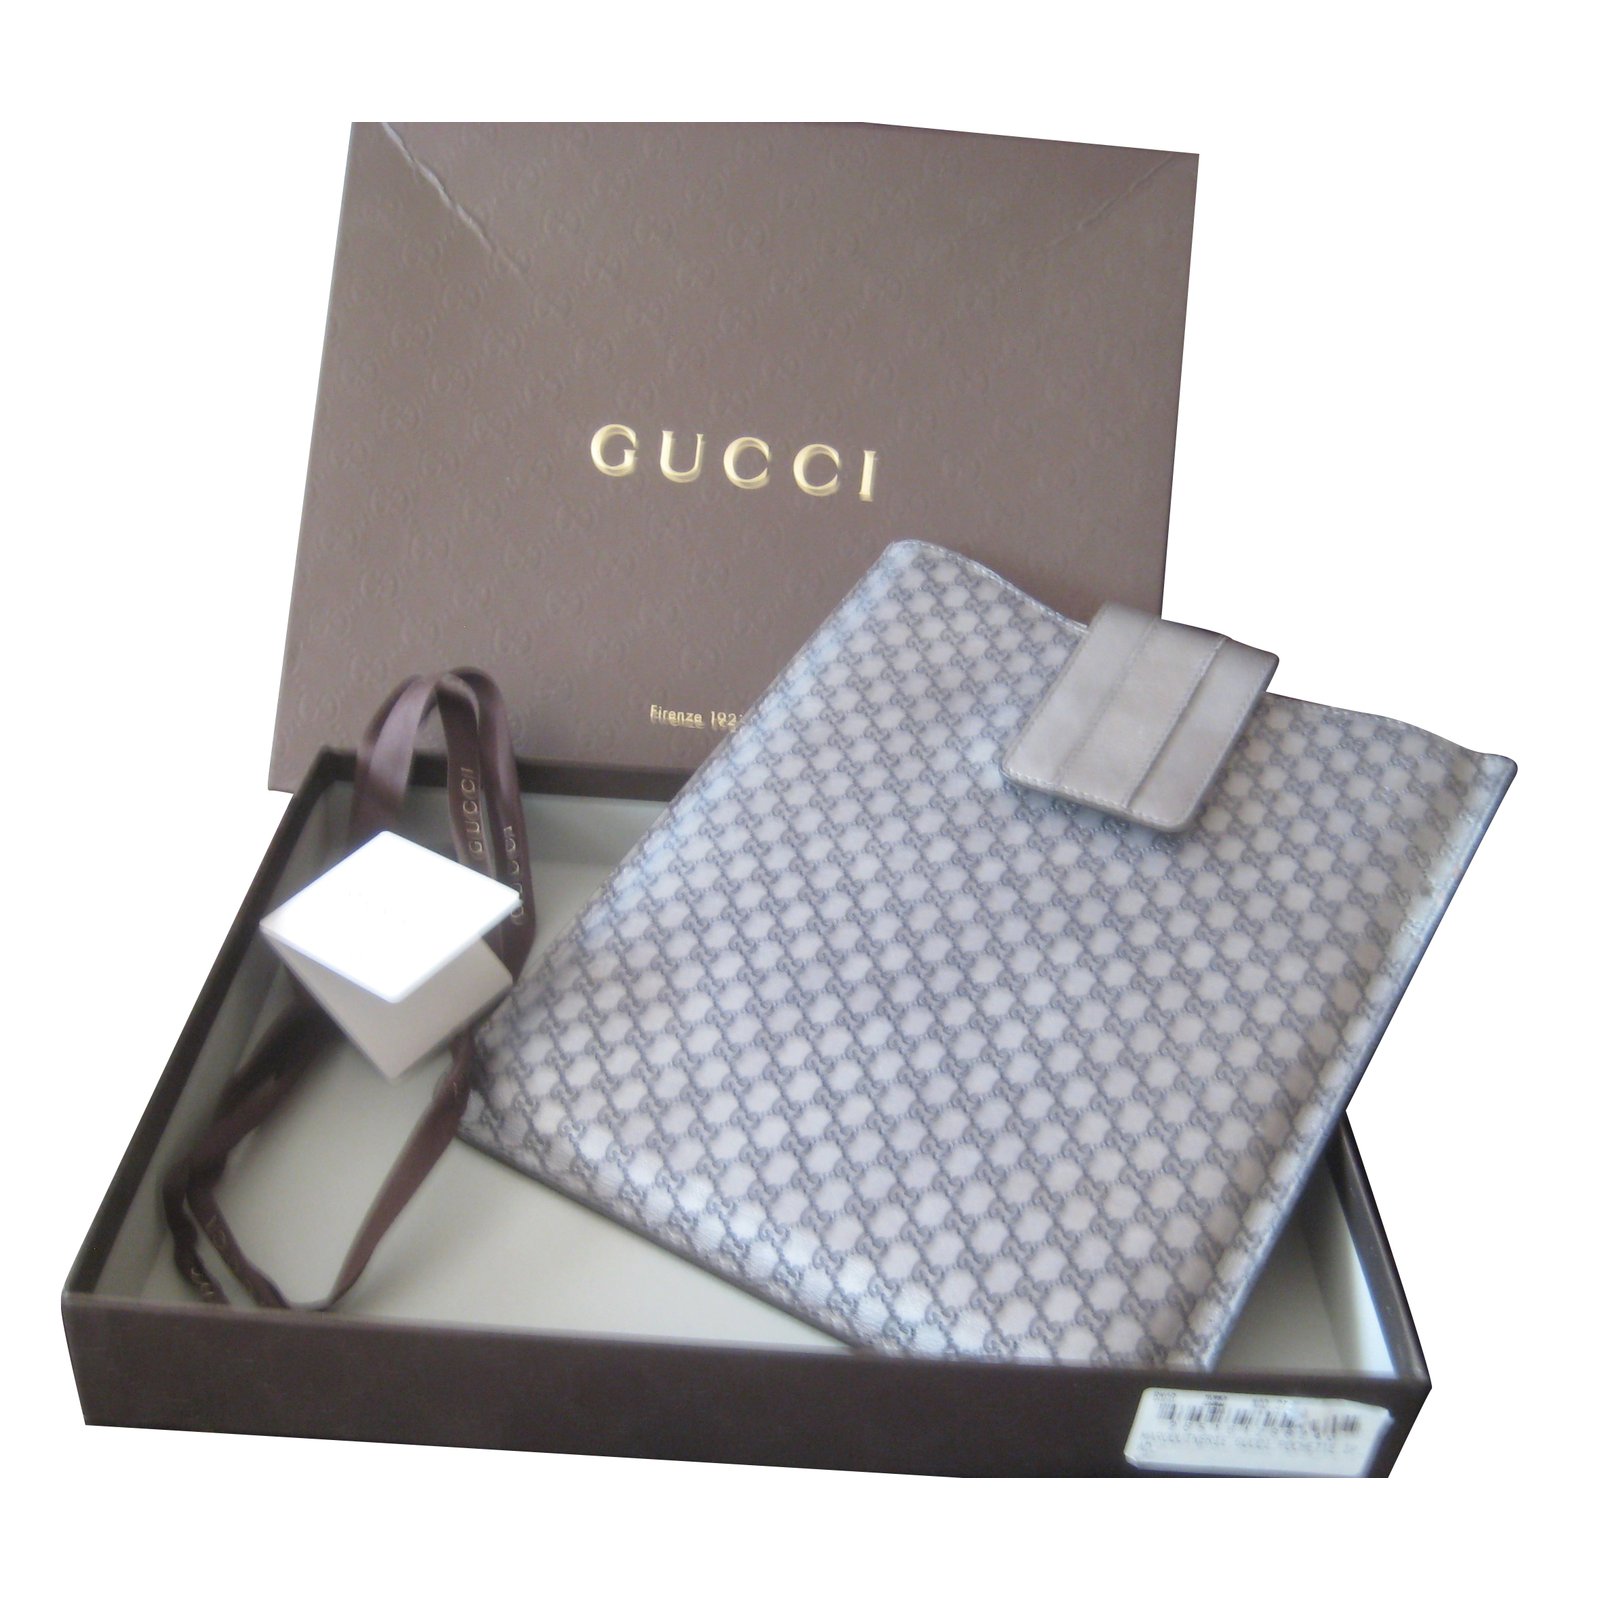 Gucci ipad case Purses, wallets, cases 